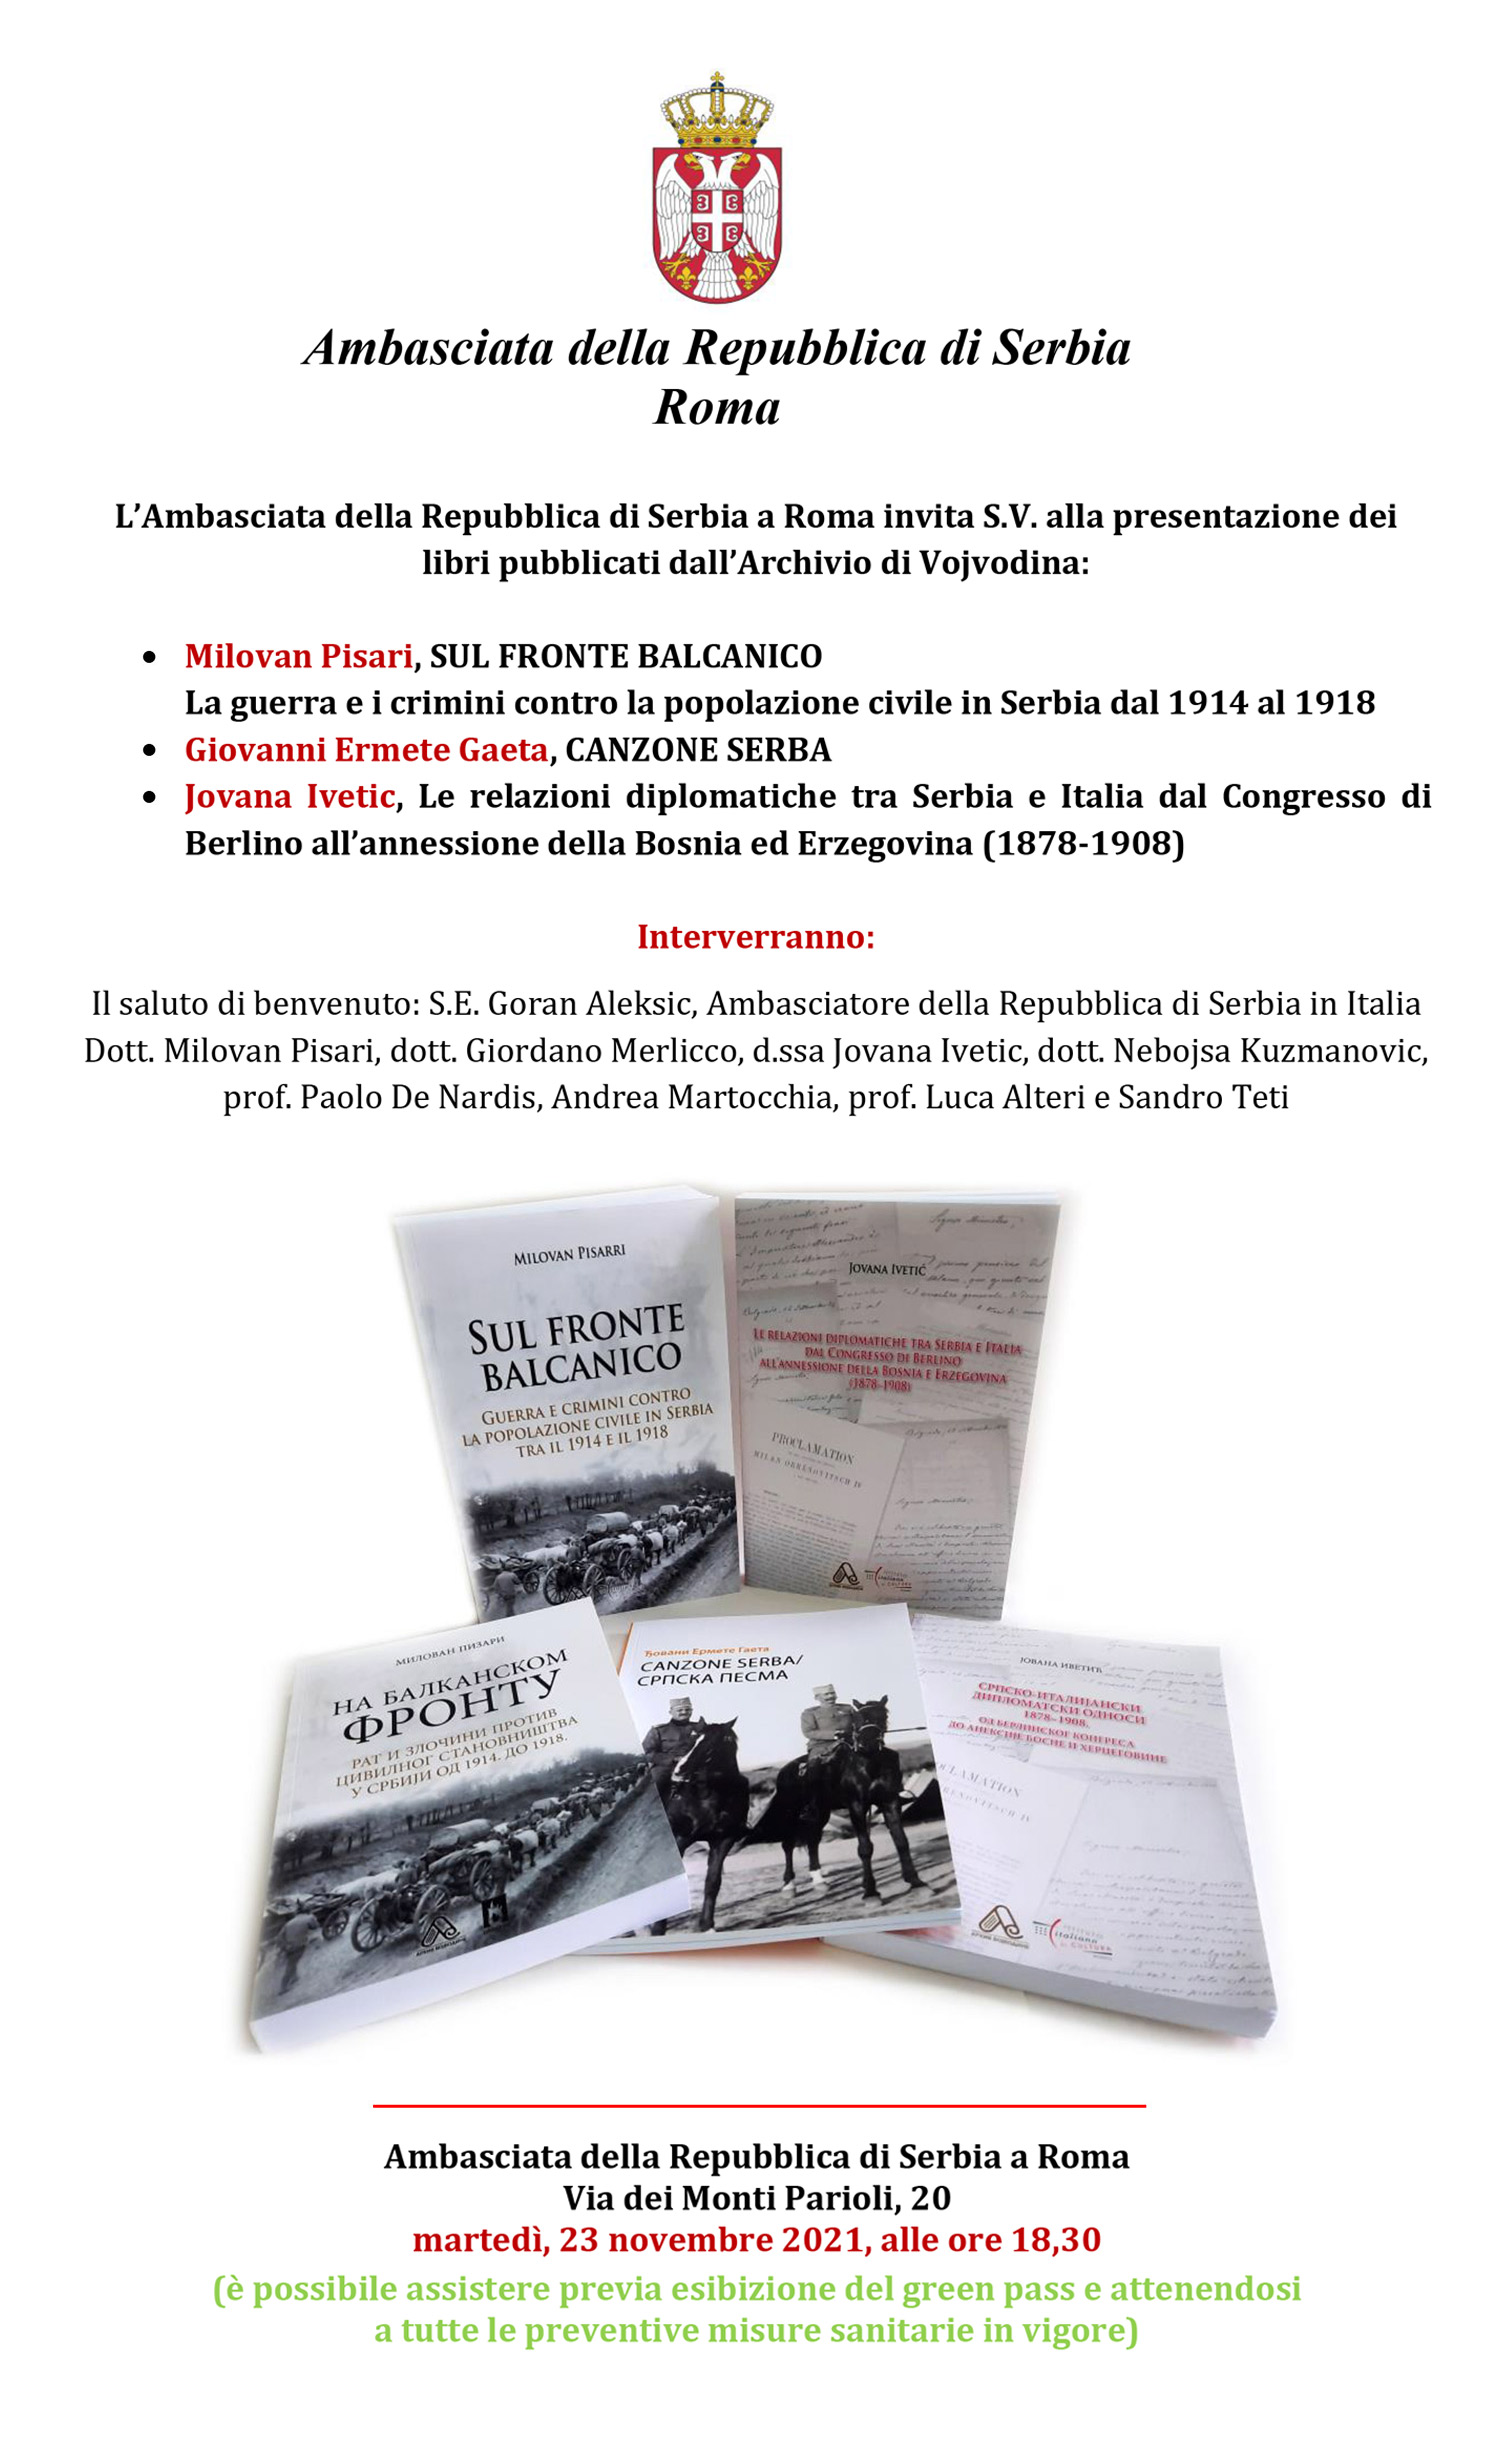 Промоција књига Архива Војводине у Риму